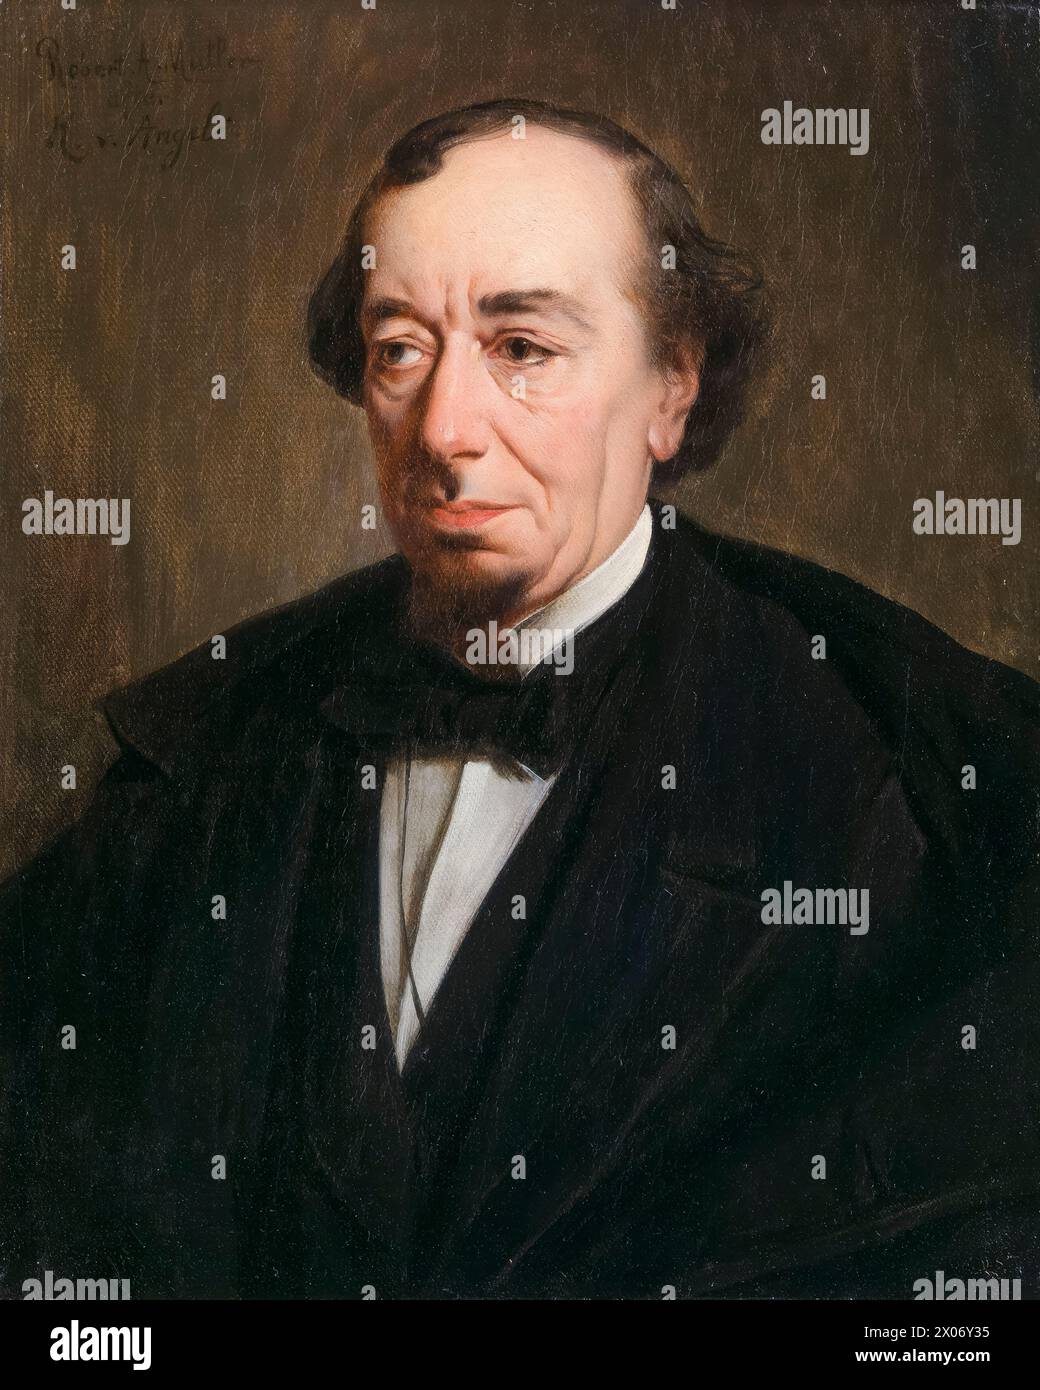 Benjamin Disraeli, 1er comte de Beaconsfield (1804-1881), deux fois premier ministre du Royaume-Uni 1868 et 1874-1880, portrait peint à l'huile sur toile par Robert Antoine Müller, 1878-1881 Banque D'Images